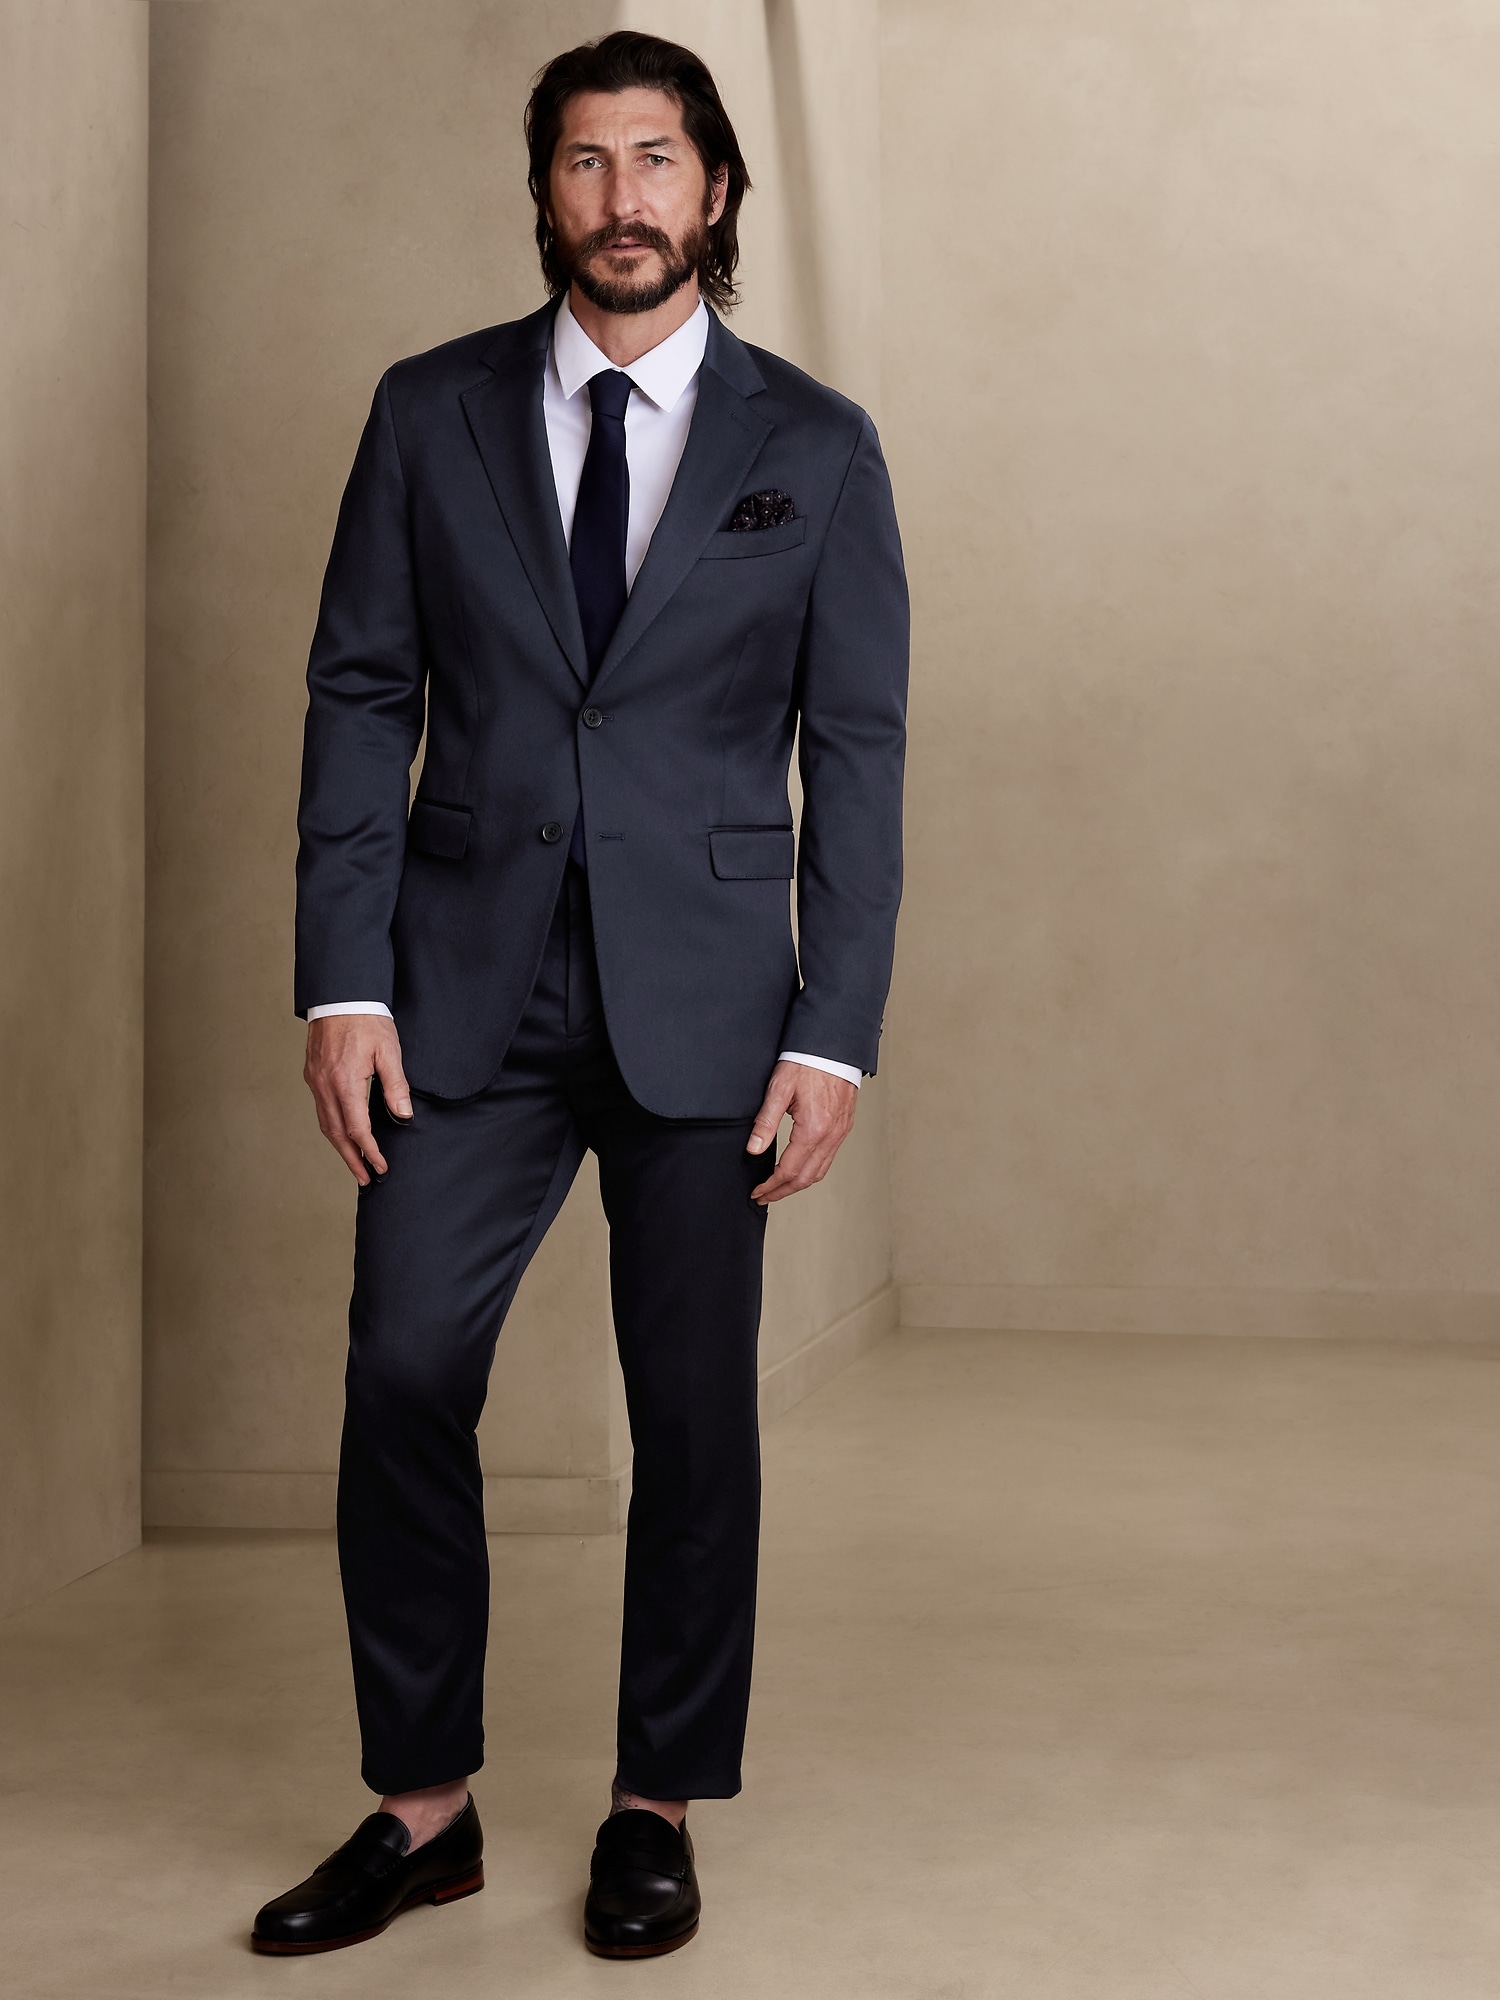 Men's Wedding Suits | Wedding Suits for Men | Marc Darcy